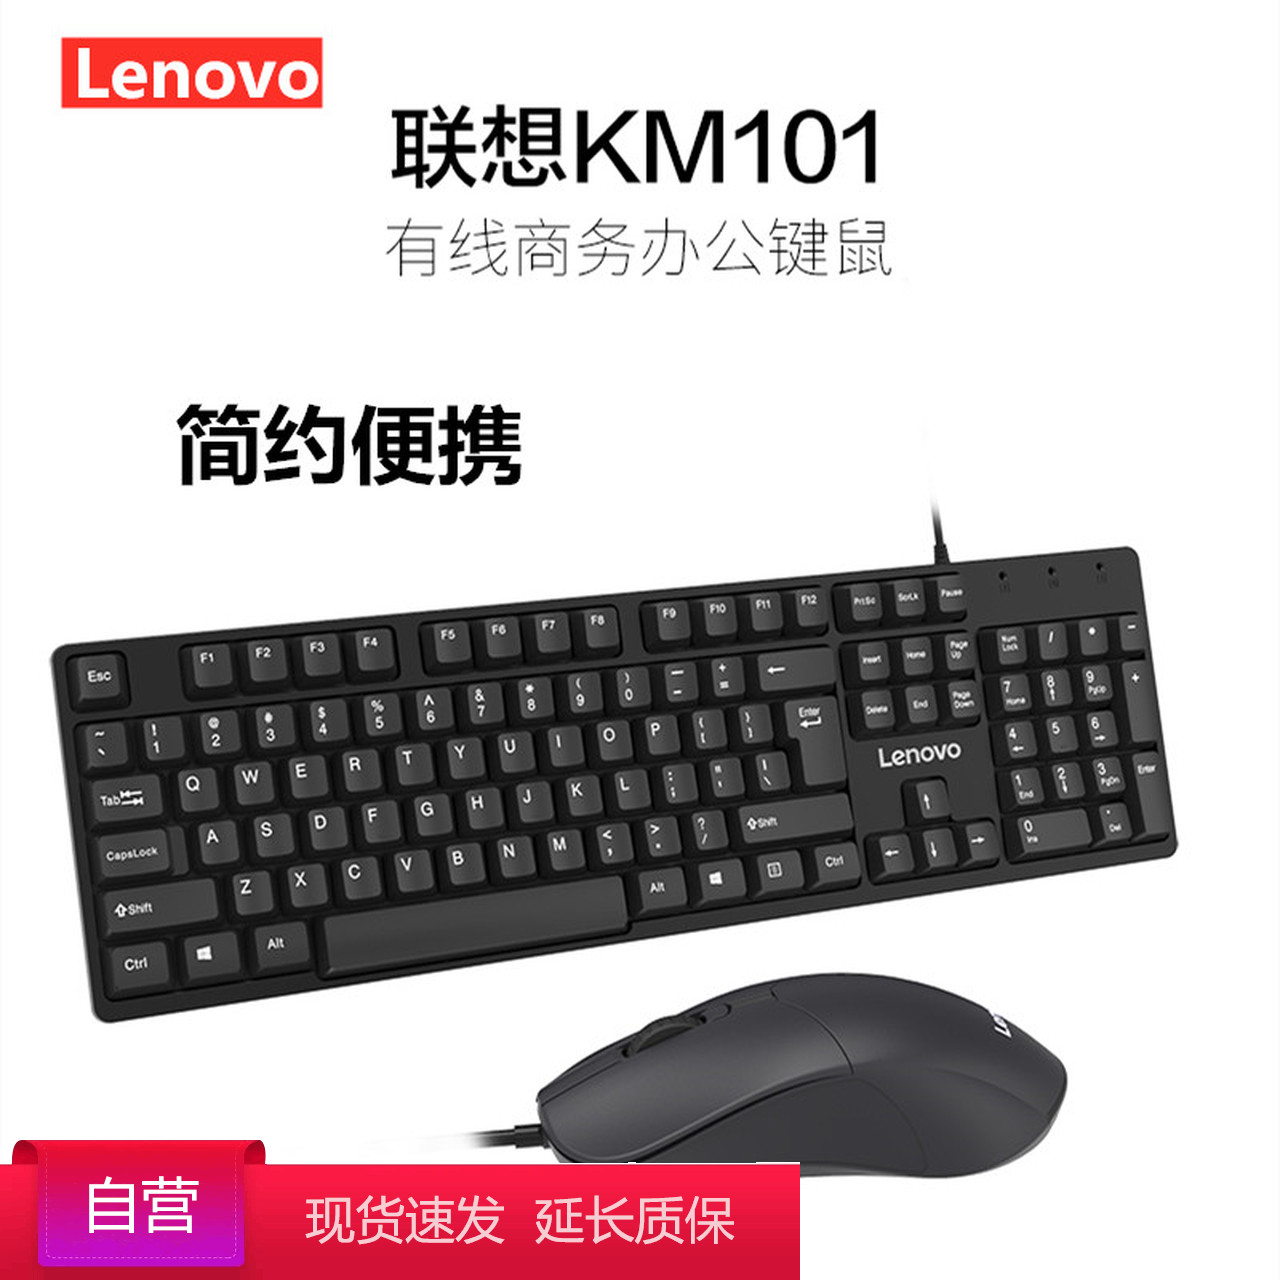 联想(Lenovo) KM101 黑色 USB 商务办公 有线键鼠套装